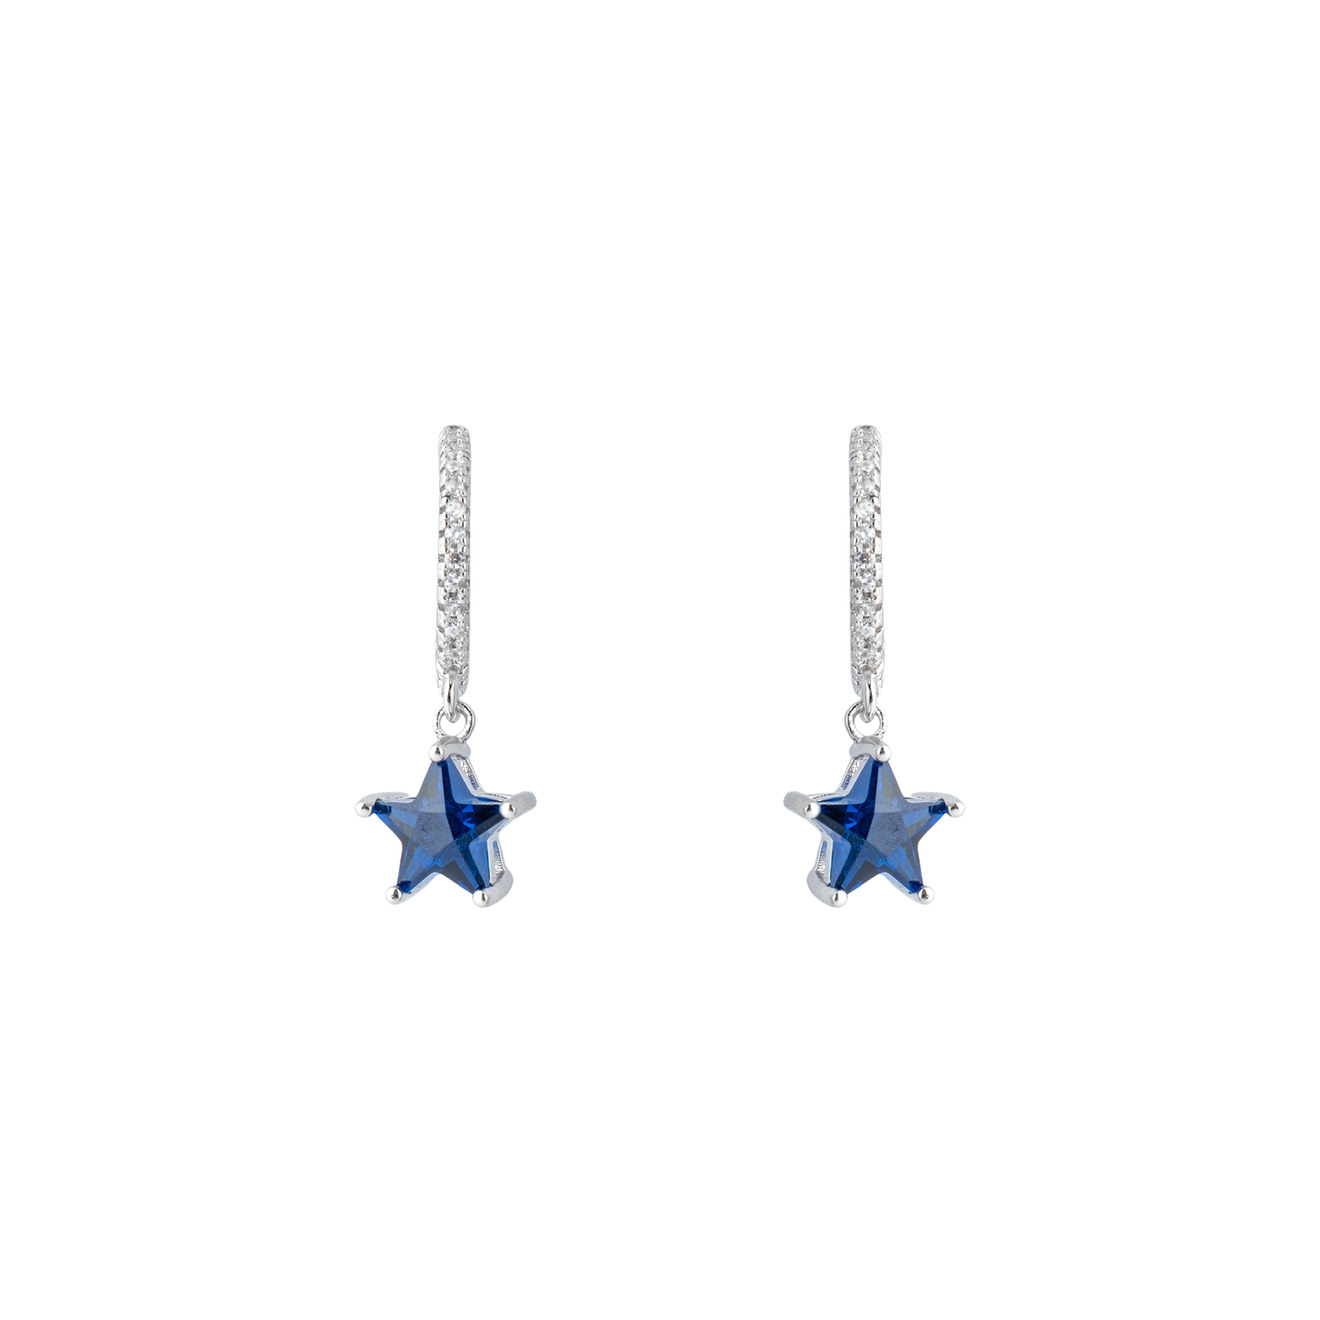 SKYE Серебряные серьги с синими кристаллами-звездами skye серебряные серьги джеккеты веер